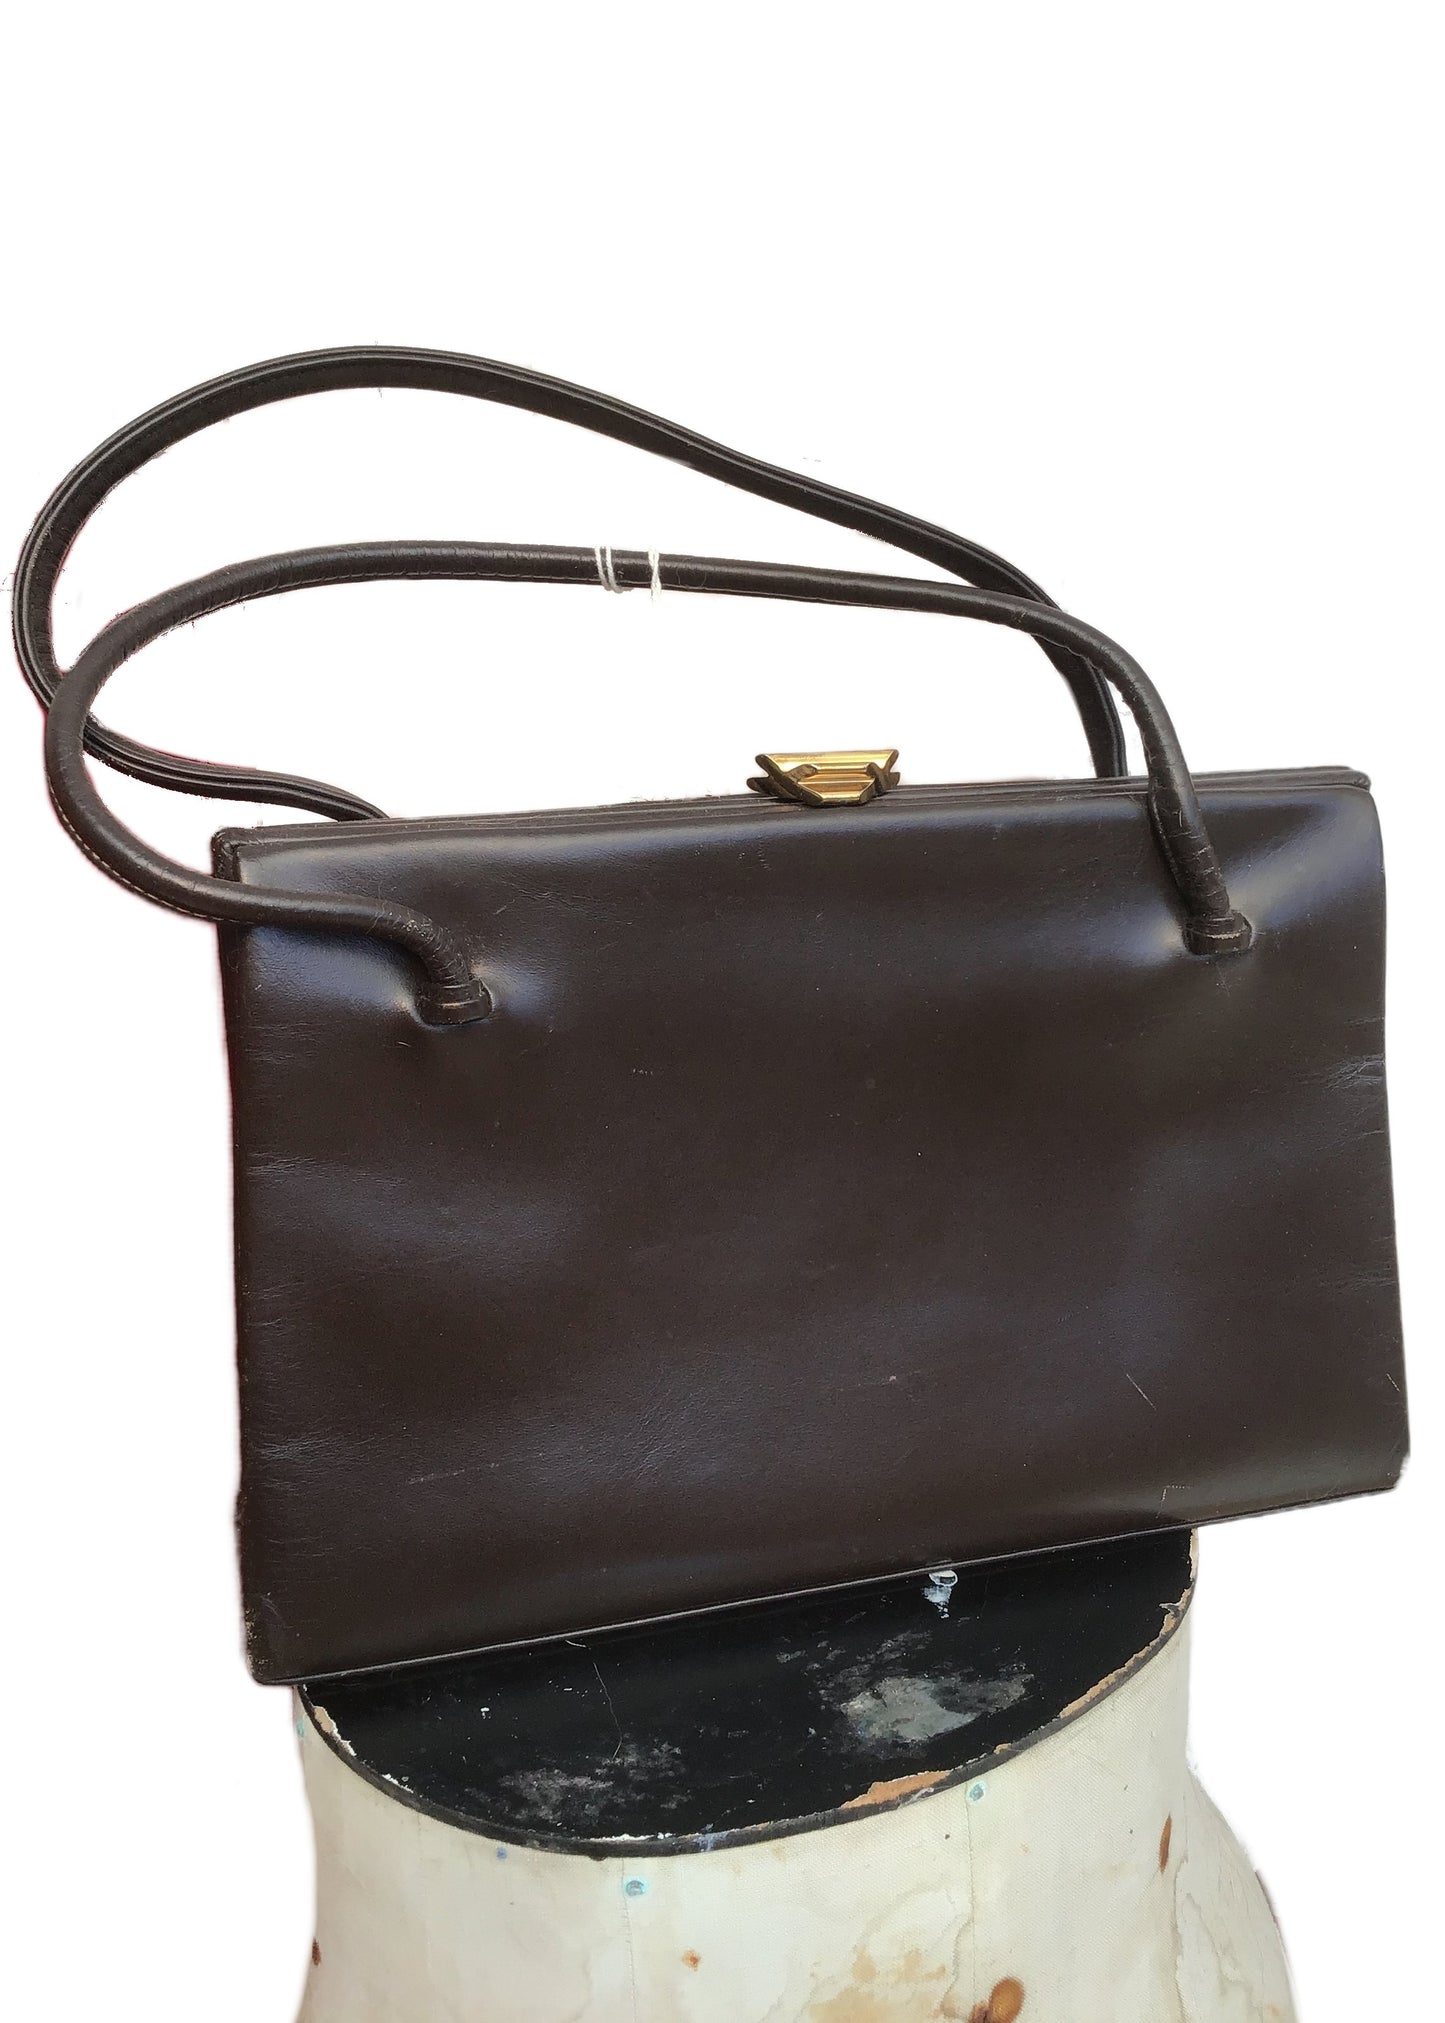 brown leather vintage waldybag top handle handbag of quality